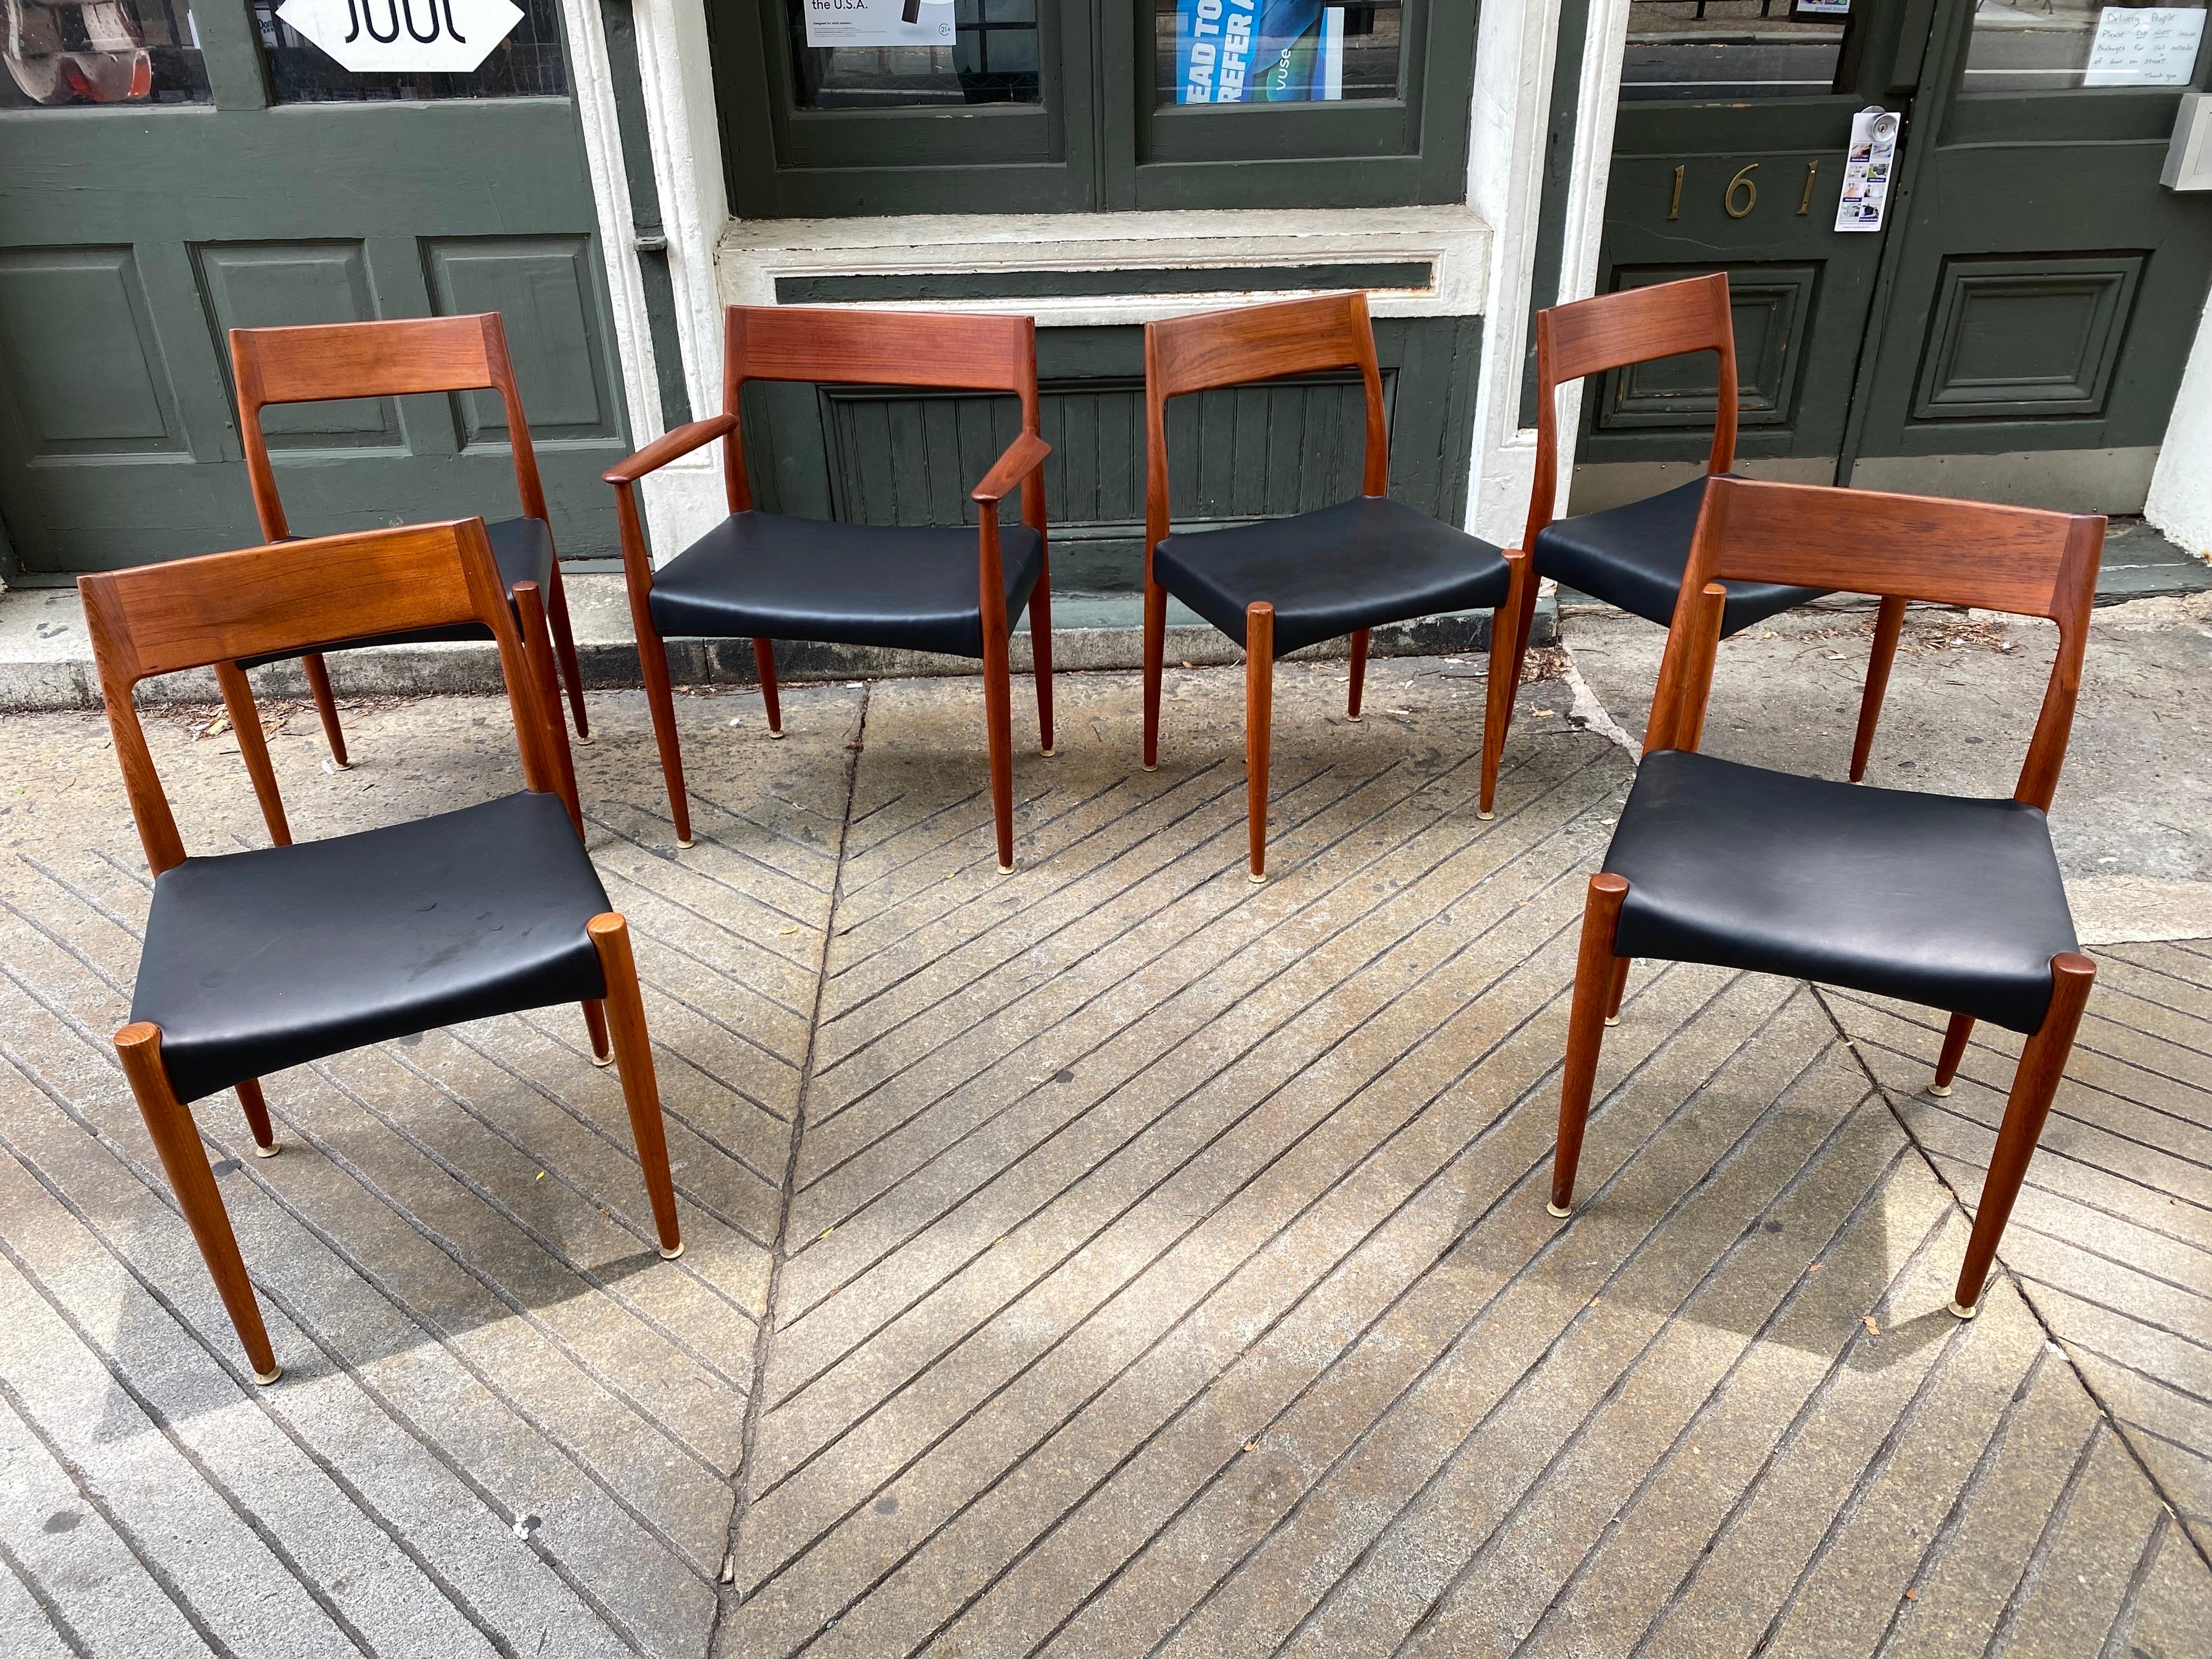 Satz von 6 Arne Hovmand-Olsen Teak-Esszimmerstühlen mit neuen Leder- und Schaumstoffsitzen.  Ein Sessel und 5 Sessel ohne Armlehnen.  Schönes einfaches elegantes Design, sehr leicht, aber sehr solide.  Der Sessel ist 25